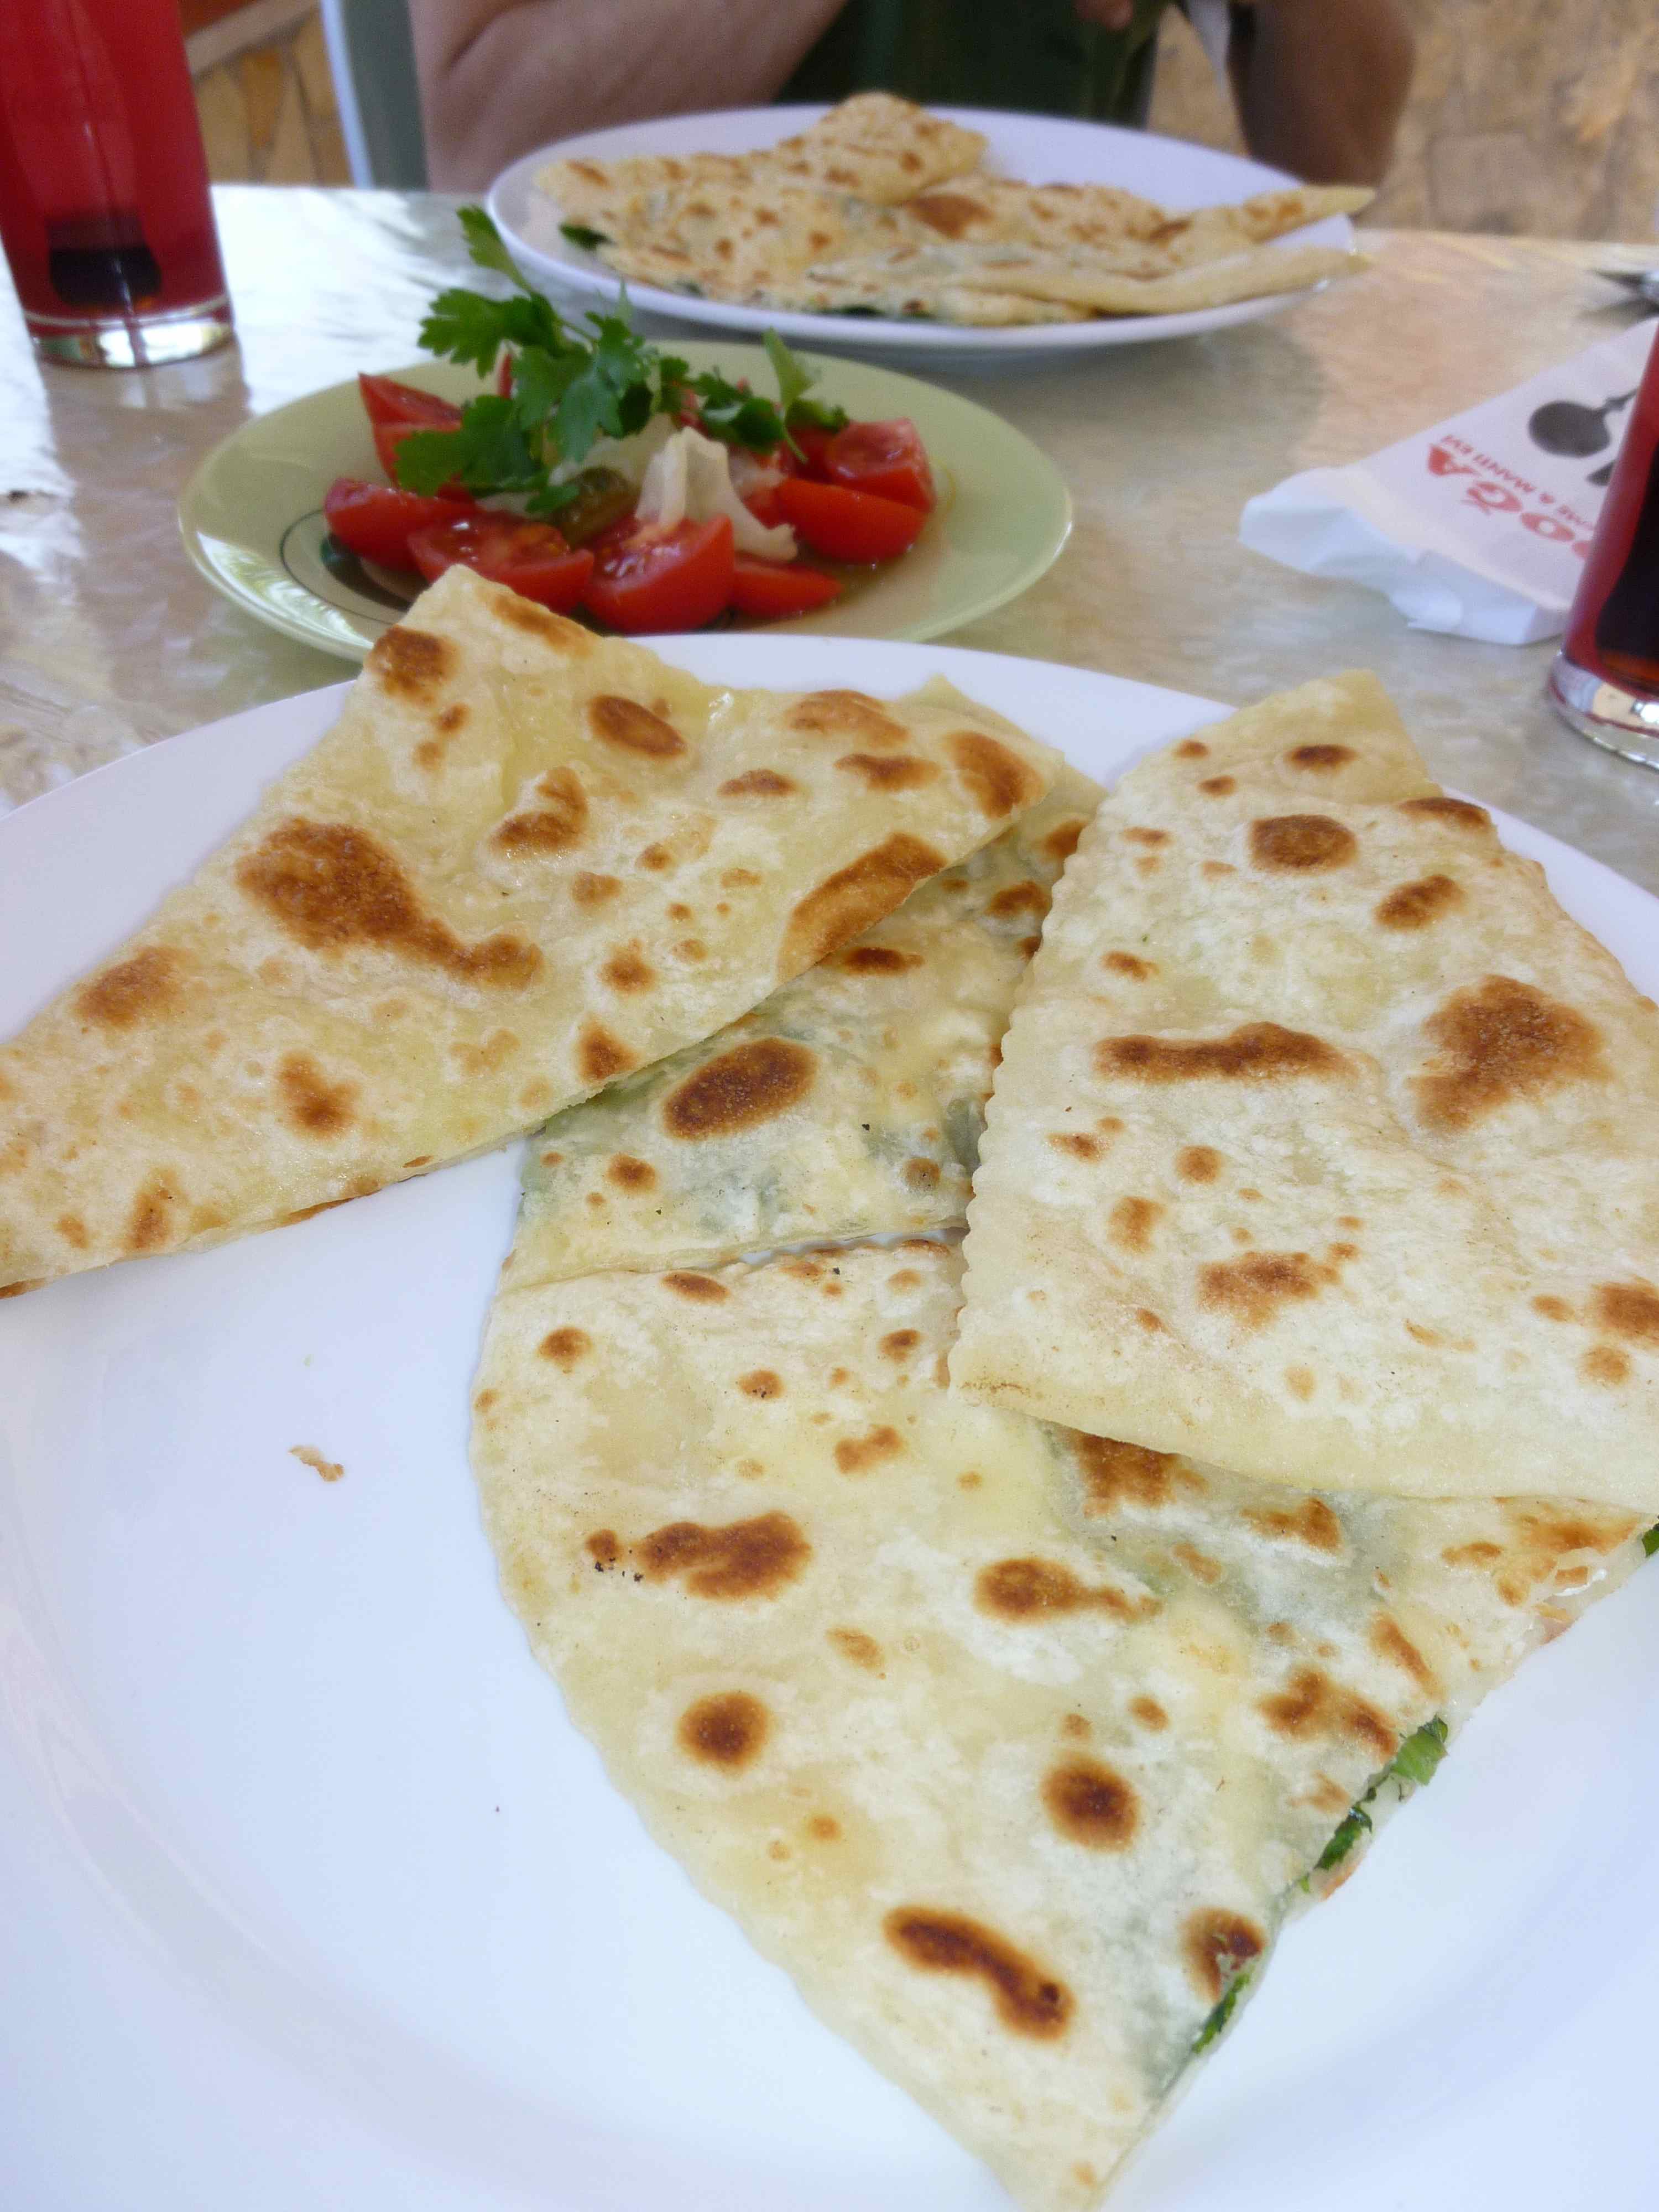 อาหารกลางวันเบา ๆ จานนี้เรียกว่า กืซเลอเม่ Gözelme คือขนมปังแผ่นบาง ๆ ใส่ไส้มันฝรั่งหรือชีส